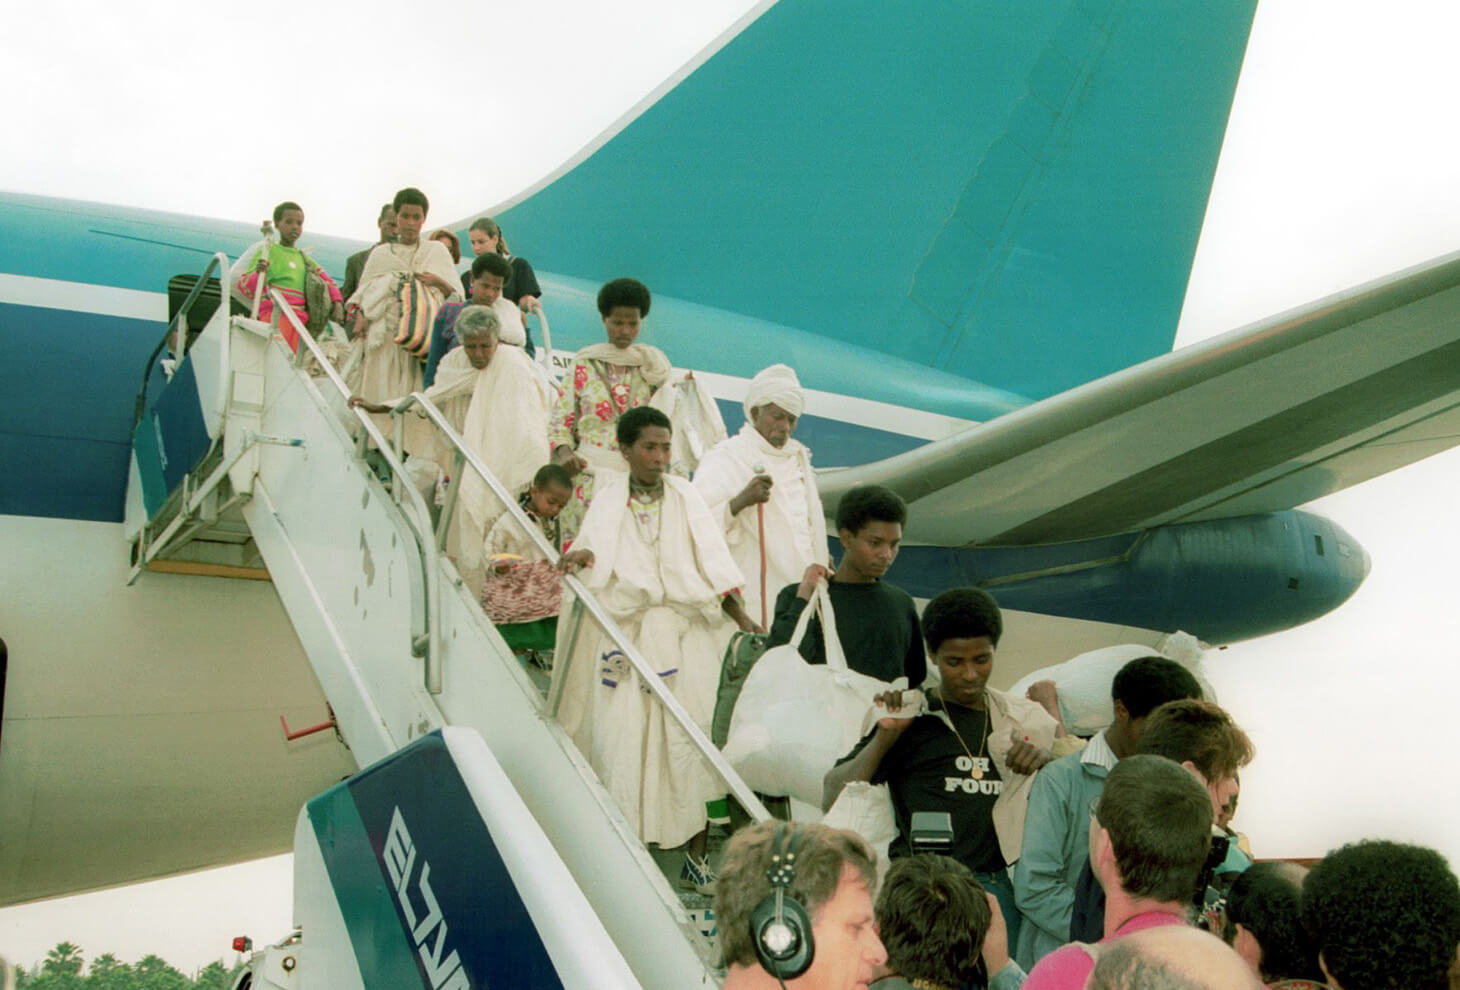 עולים חדשים מקווארה, עם קס טייה ארני מגיעים לשדה התעופה בן גוריון צילום: אולג גספר, אוסף דן הדני, הספרייה הלאומית